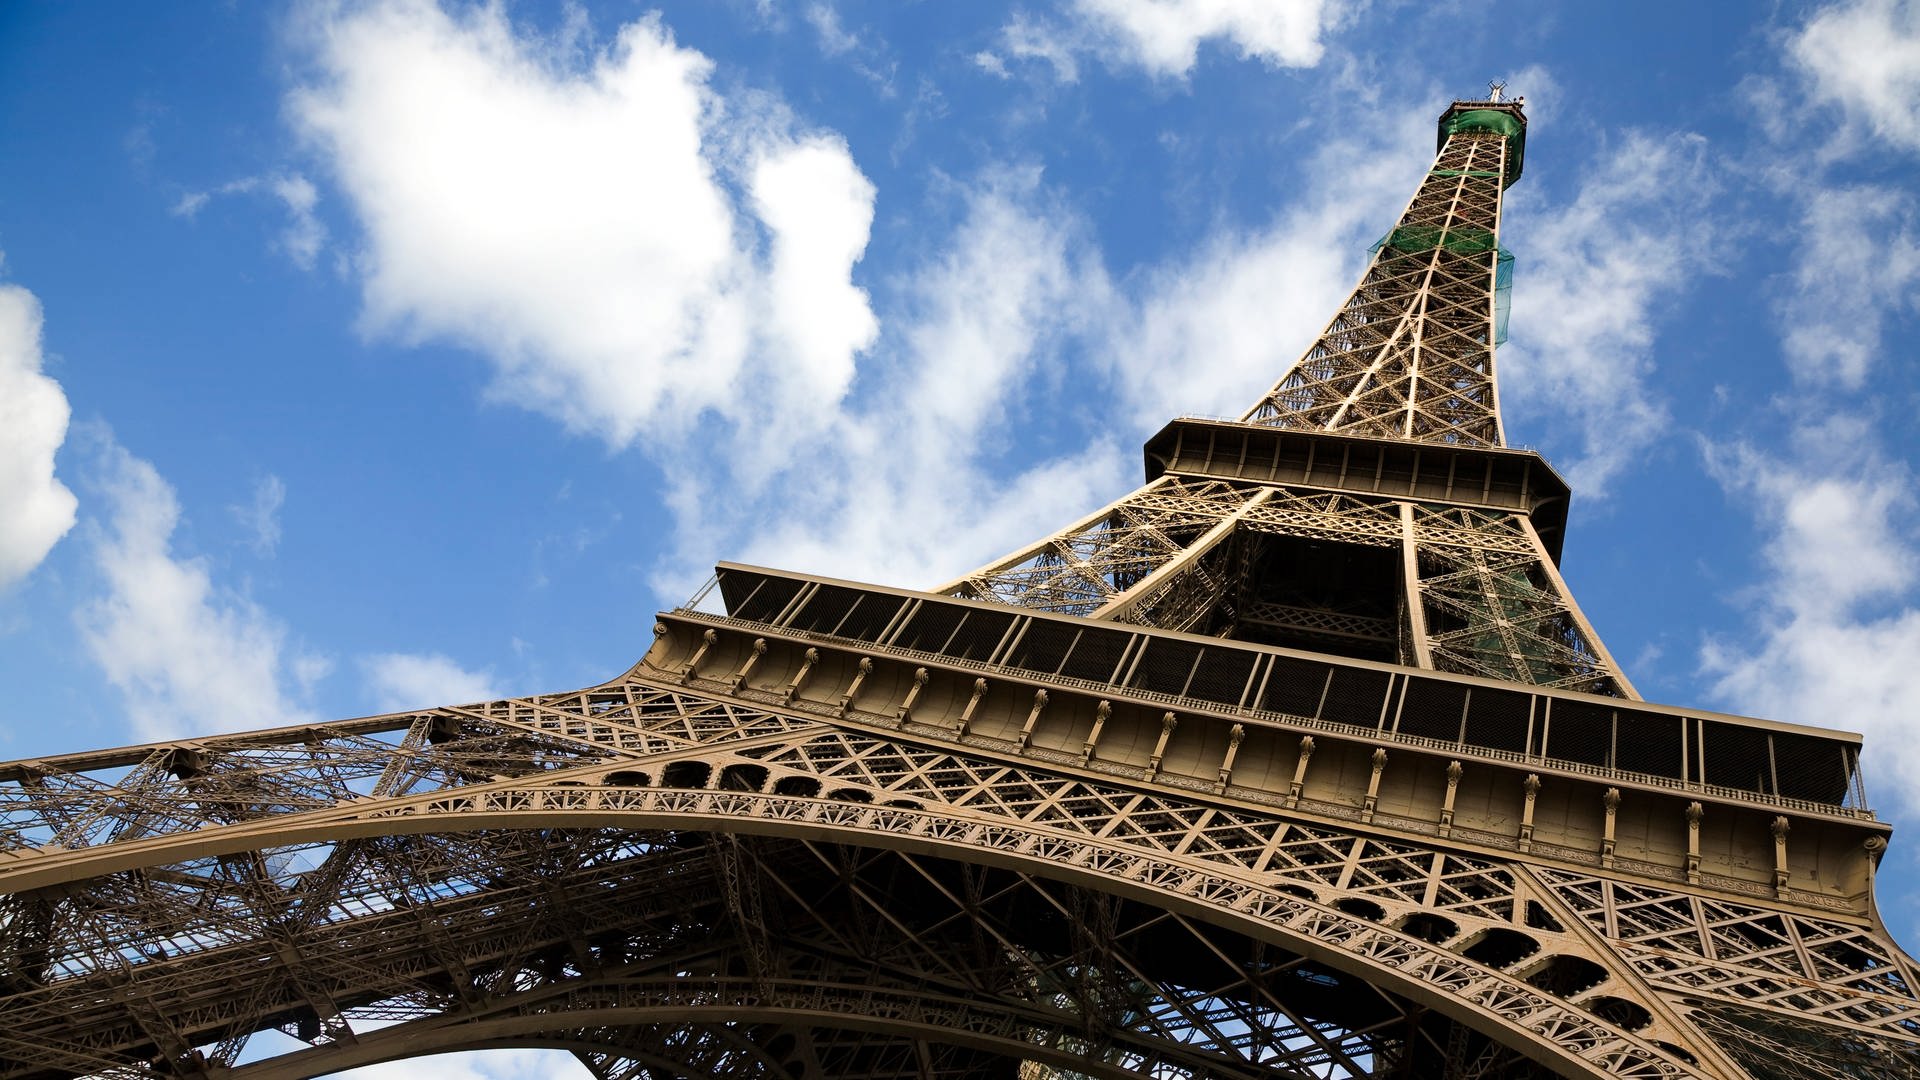 Der Eiffelturm in Paris